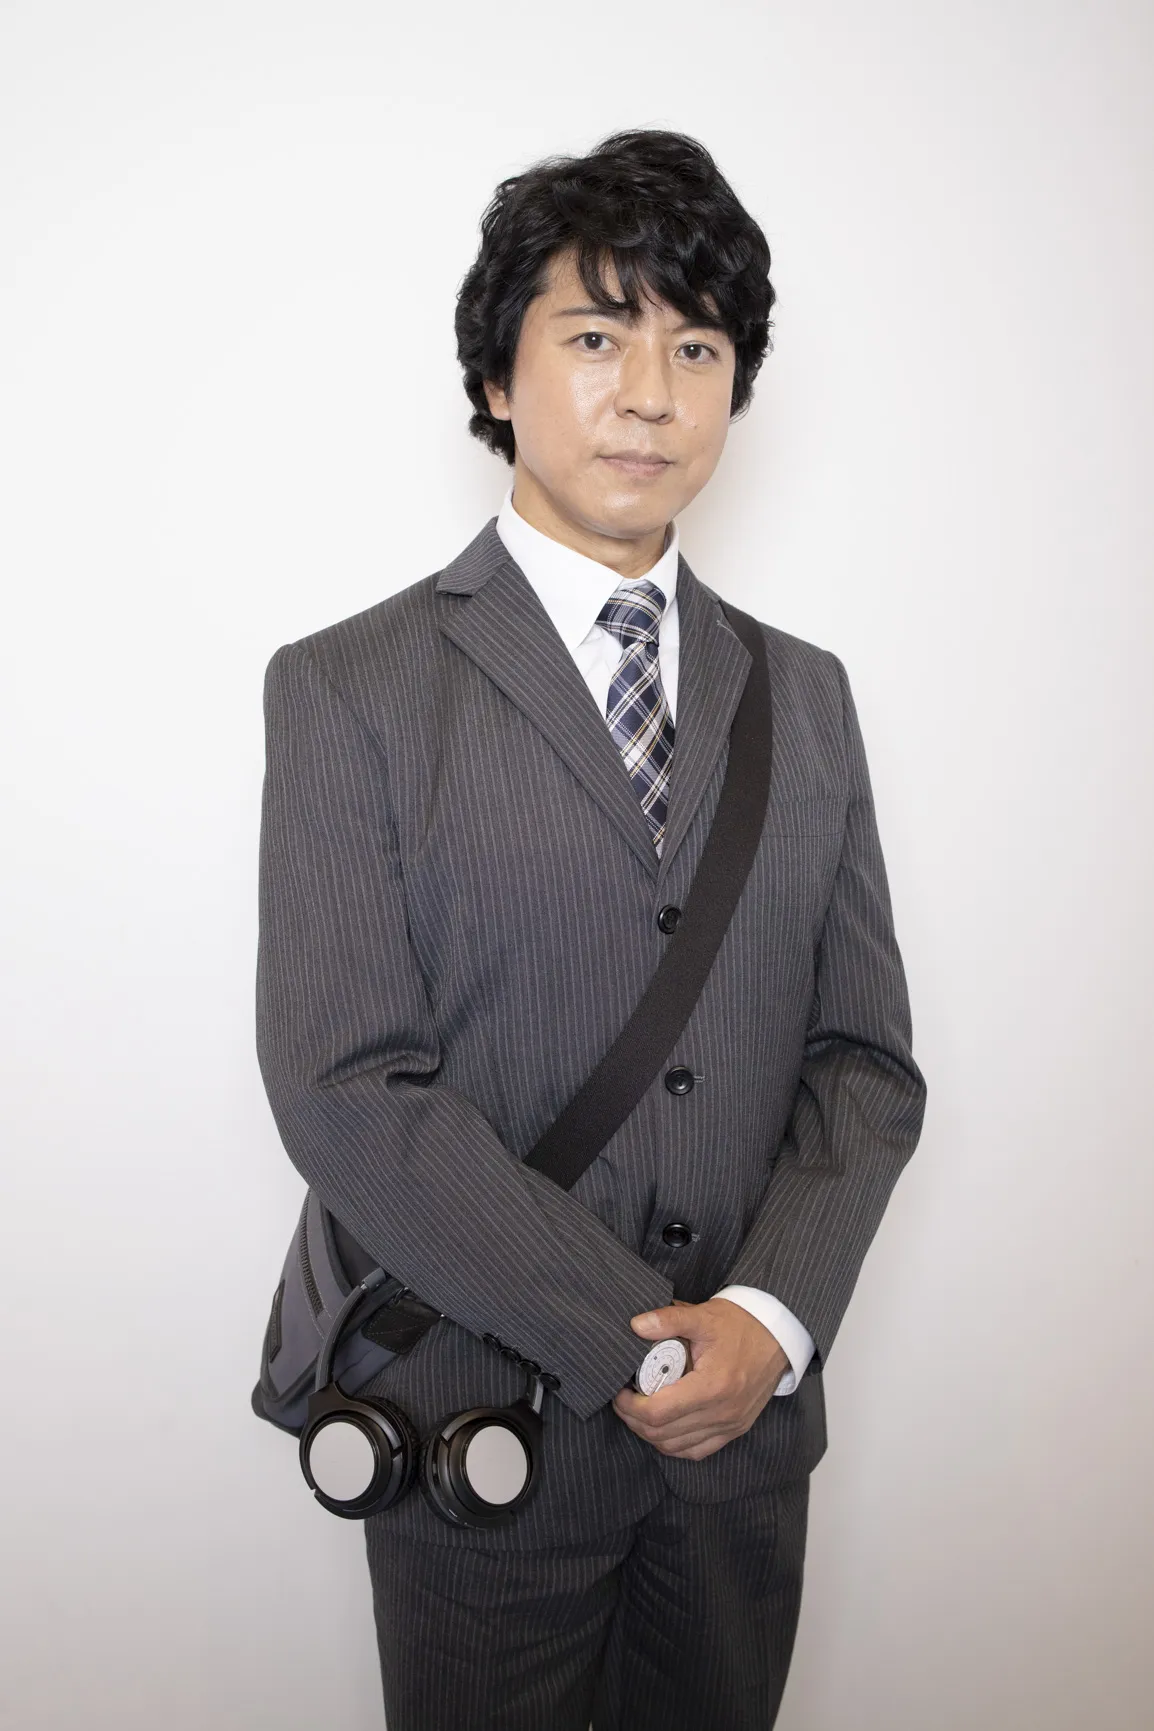 【写真を見る】“糸村さん”のトレードマークの斜めがけバック姿でポーズを取る上川隆也